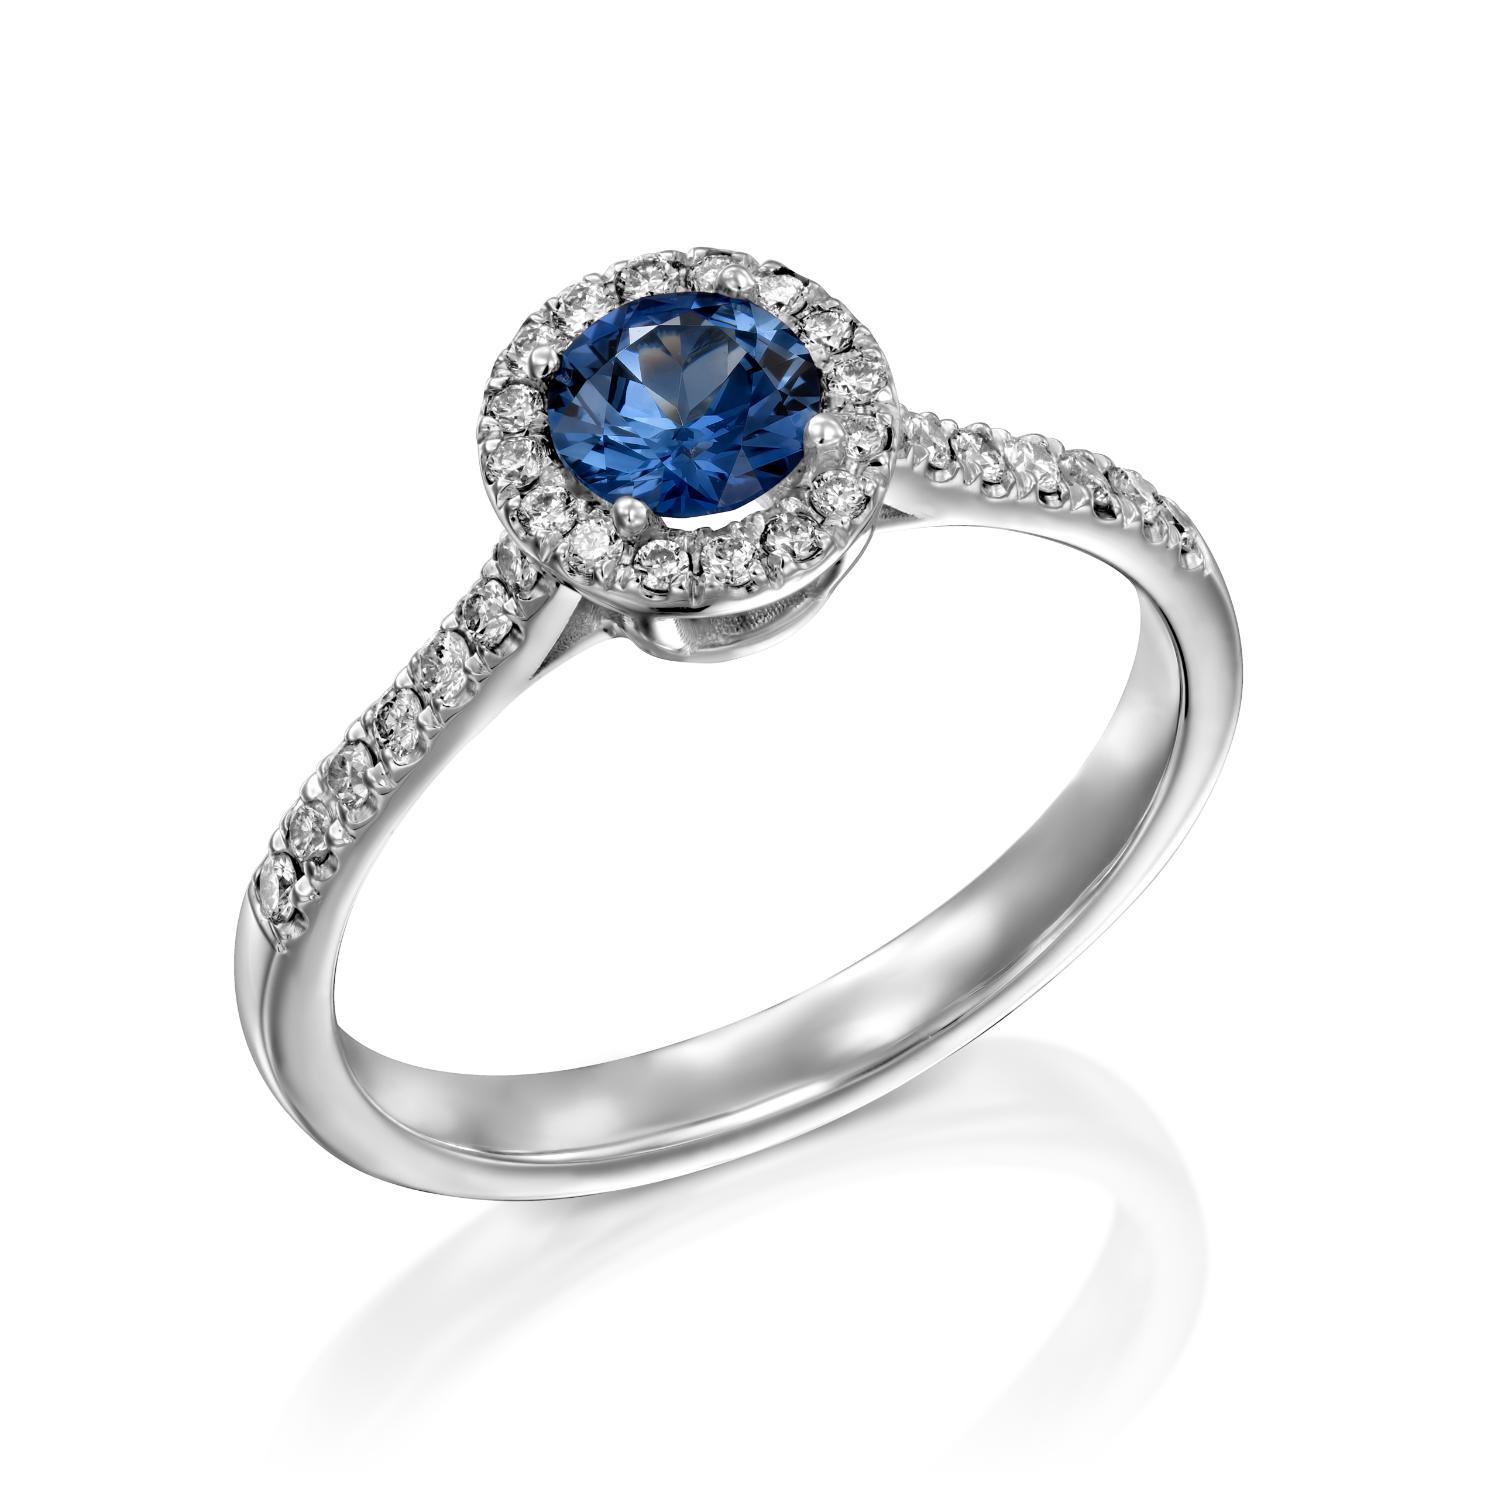 טבעת כסף אלגנטית הכוללת אבן חן כחולה זוהרת מוקפת בהילה של יהלומים נוצצים, משובצת על רקע לבן. זה טבעת ספיר ויהלומים דגם נטלי.